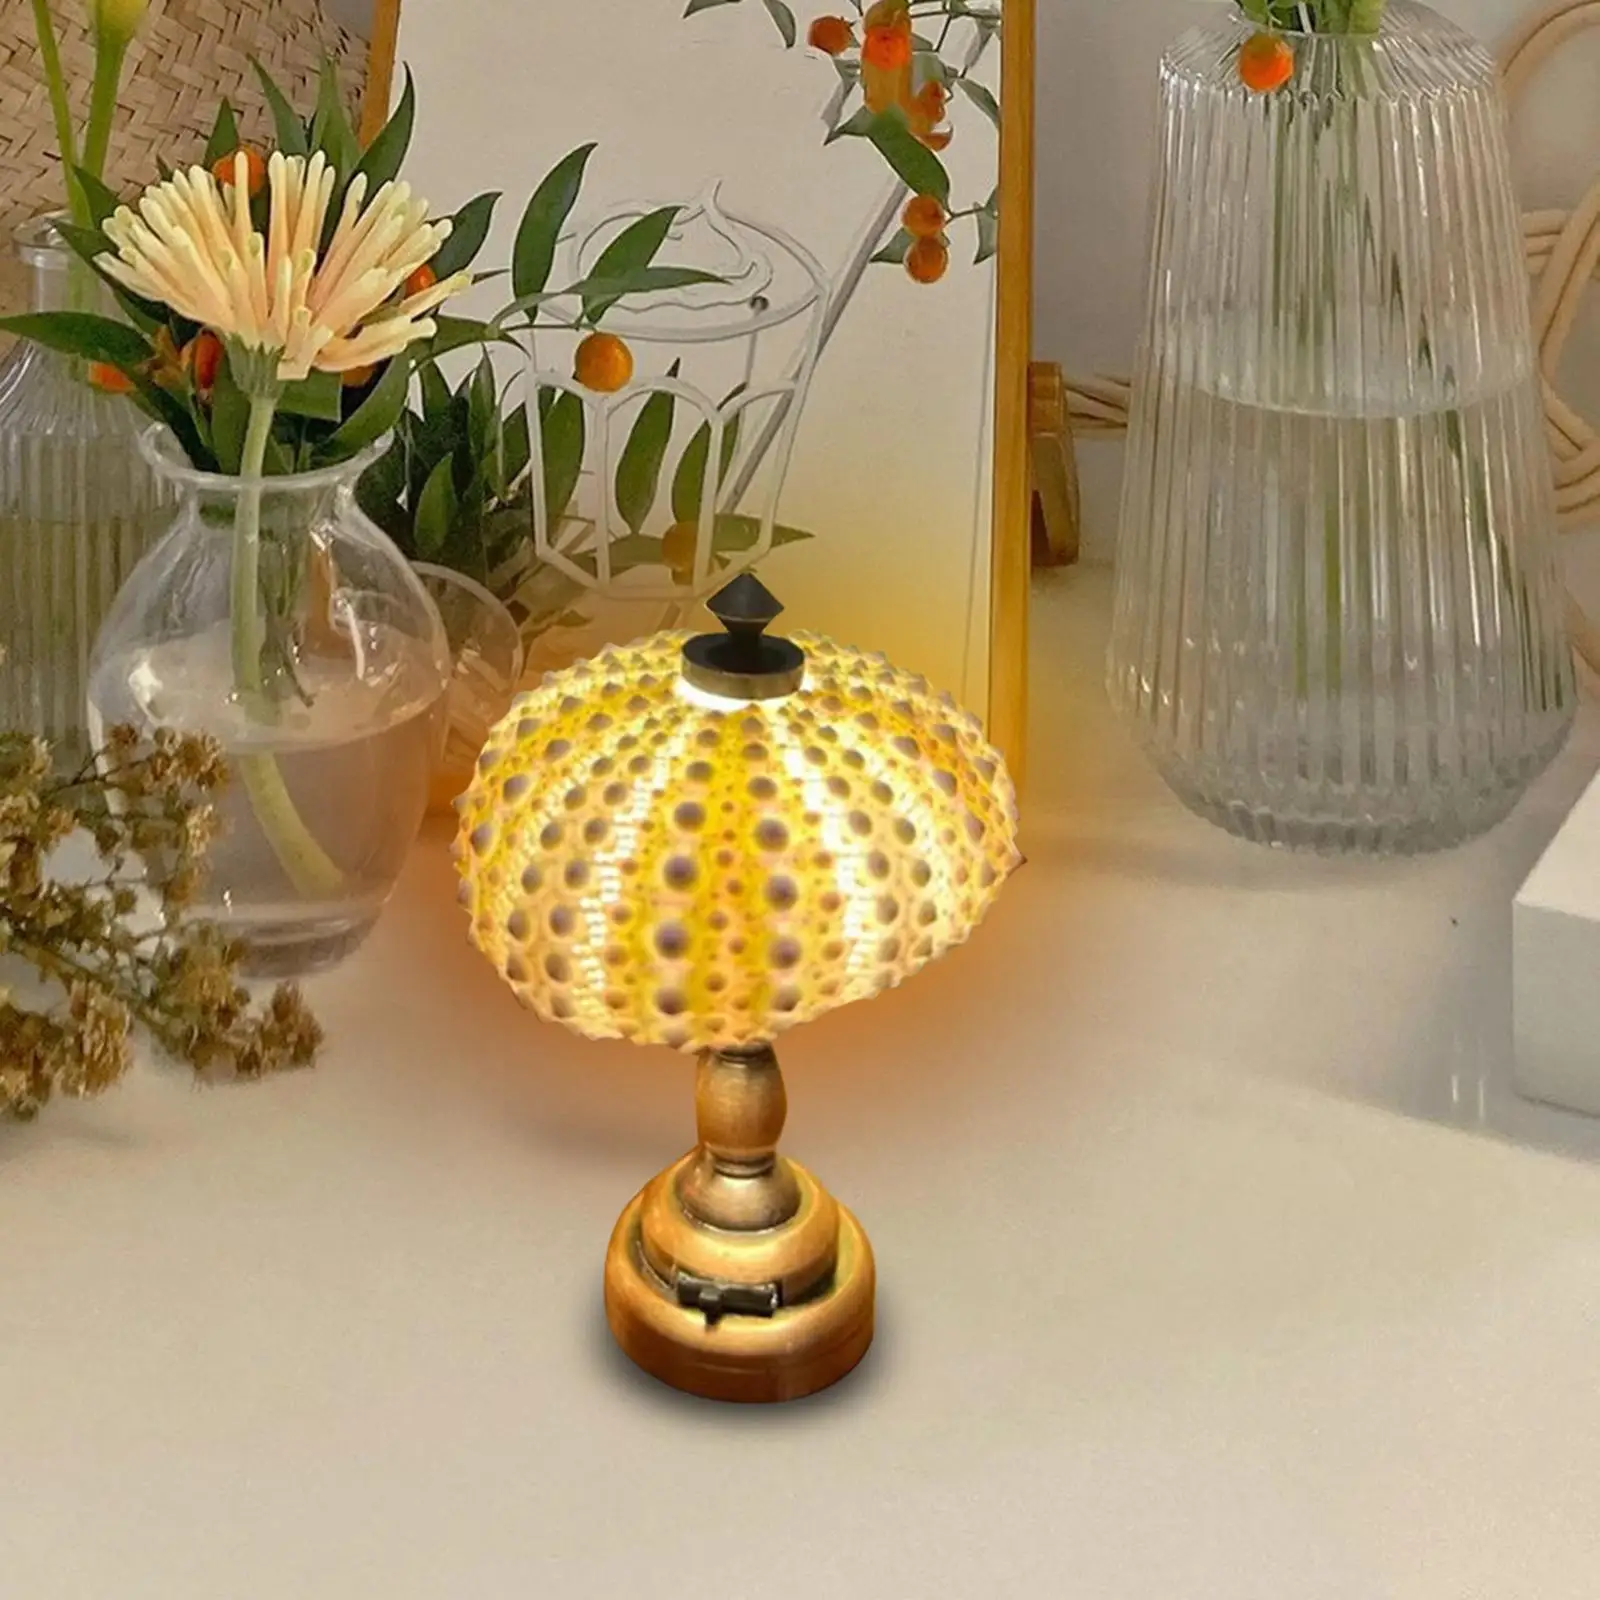 Sea Urchin Small Night Decorative Mini NightStand Lamp for